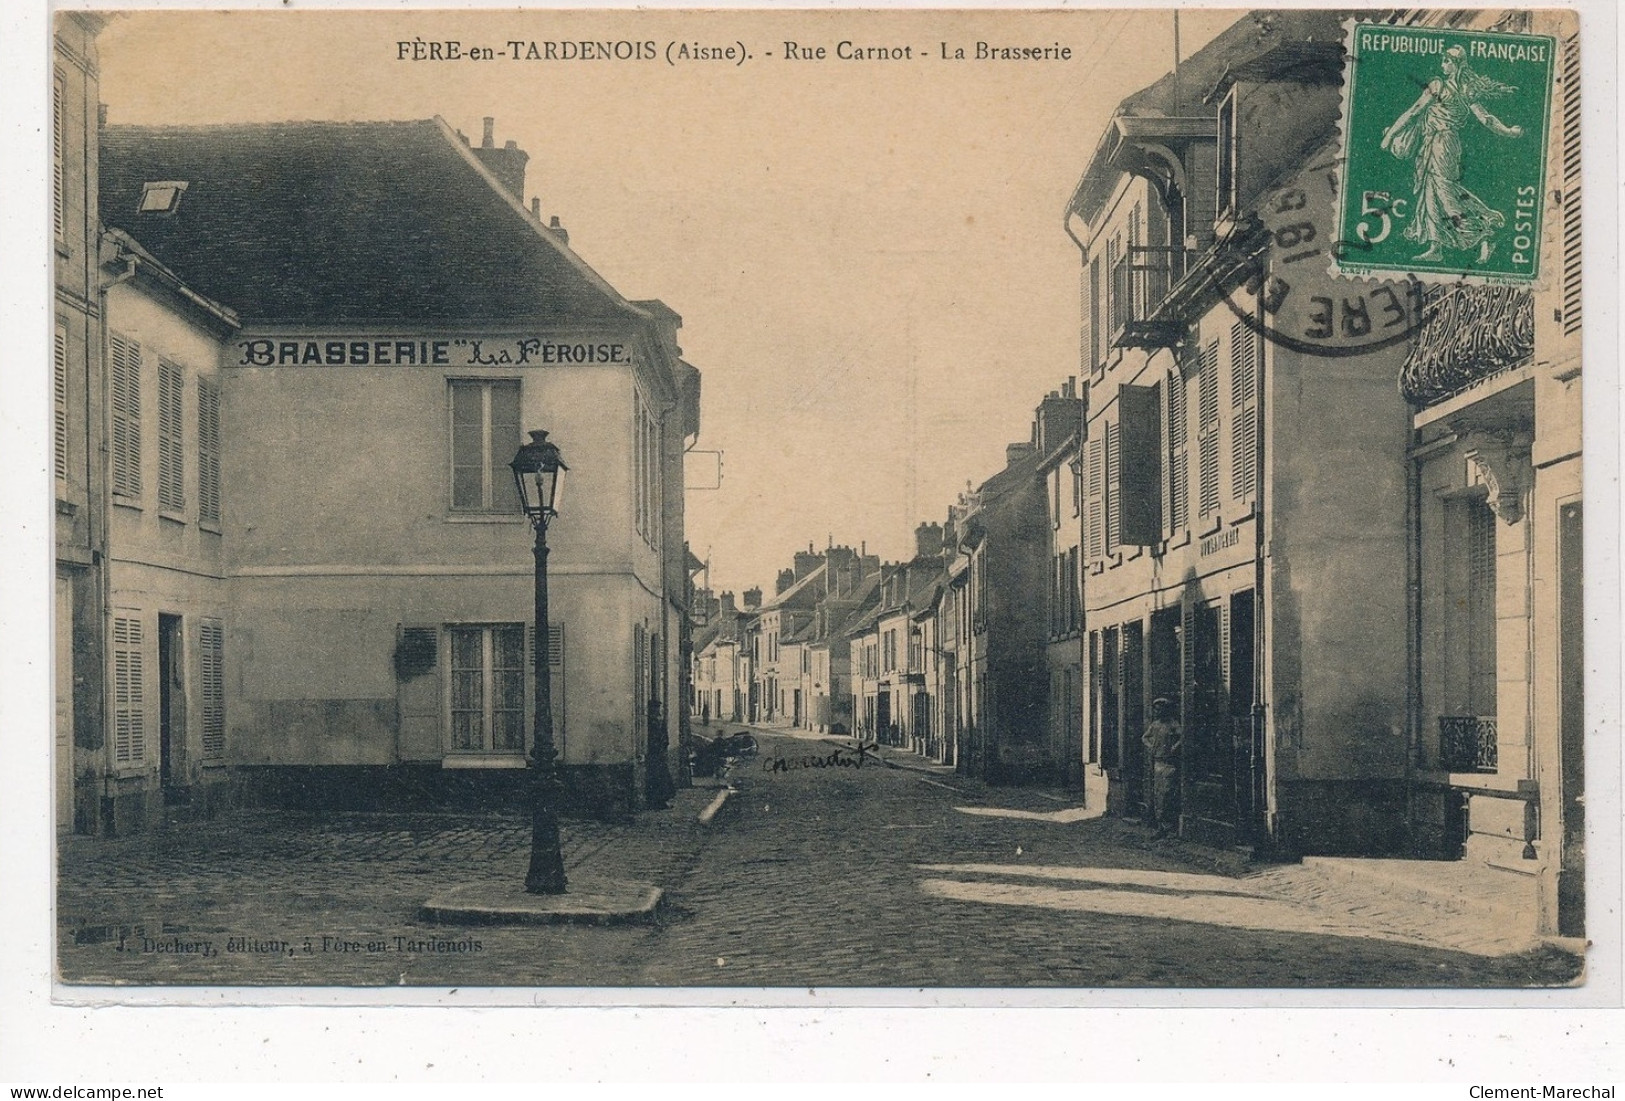 FERE-en-TARDENOIS: Rue Carnot, La Brasserie - Etat - Fere En Tardenois